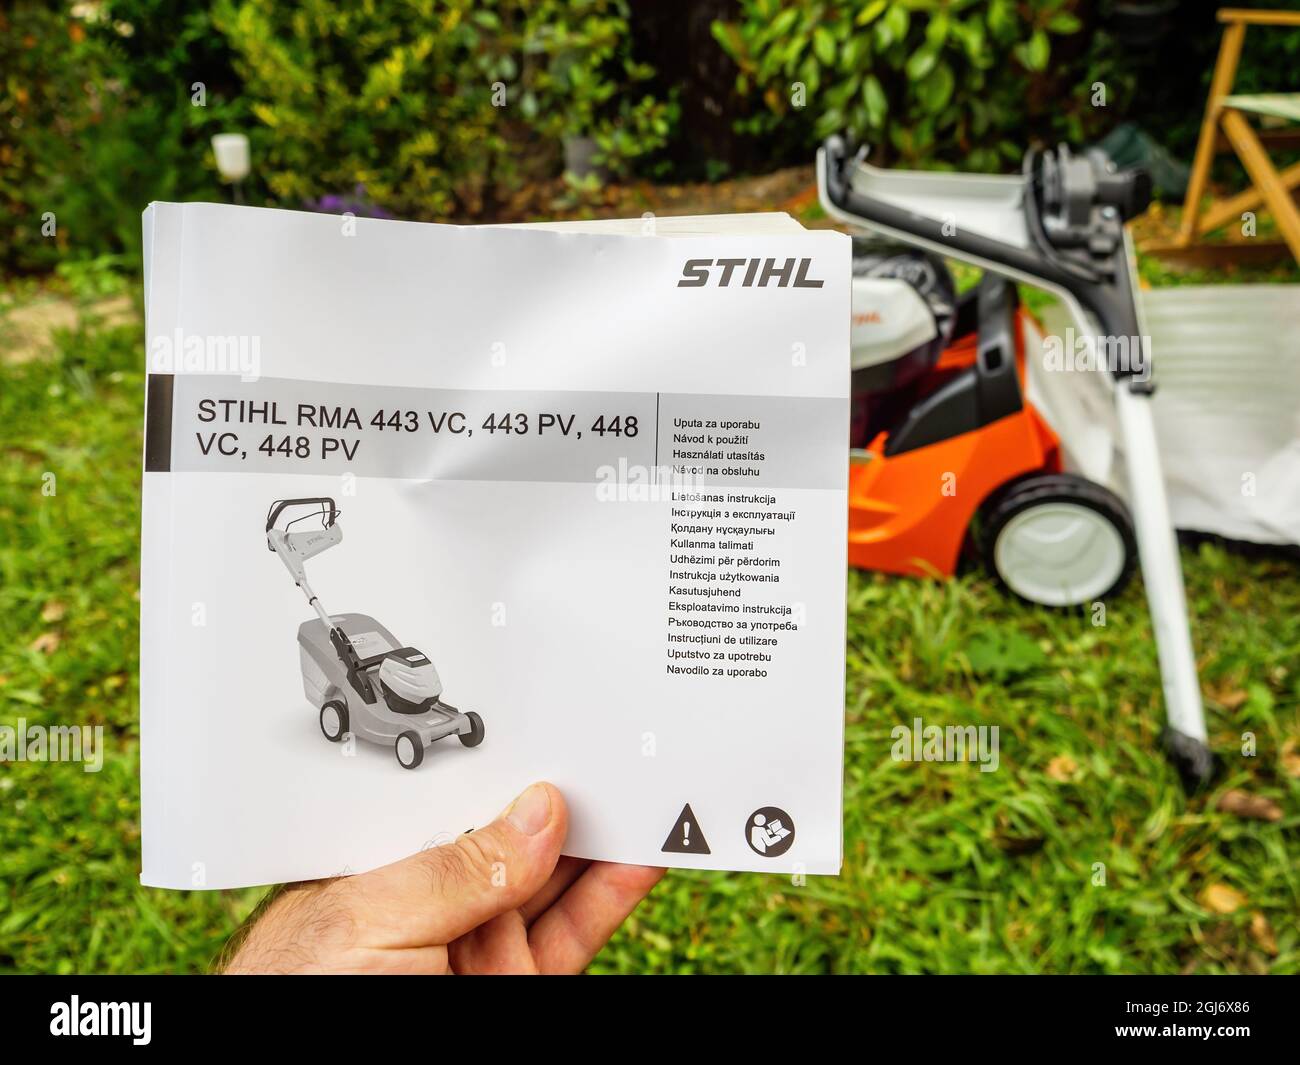 Manuale di istruzioni del rasaerba Stihl RMA 443 PV VC 448 con il prodotto  in background Foto stock - Alamy